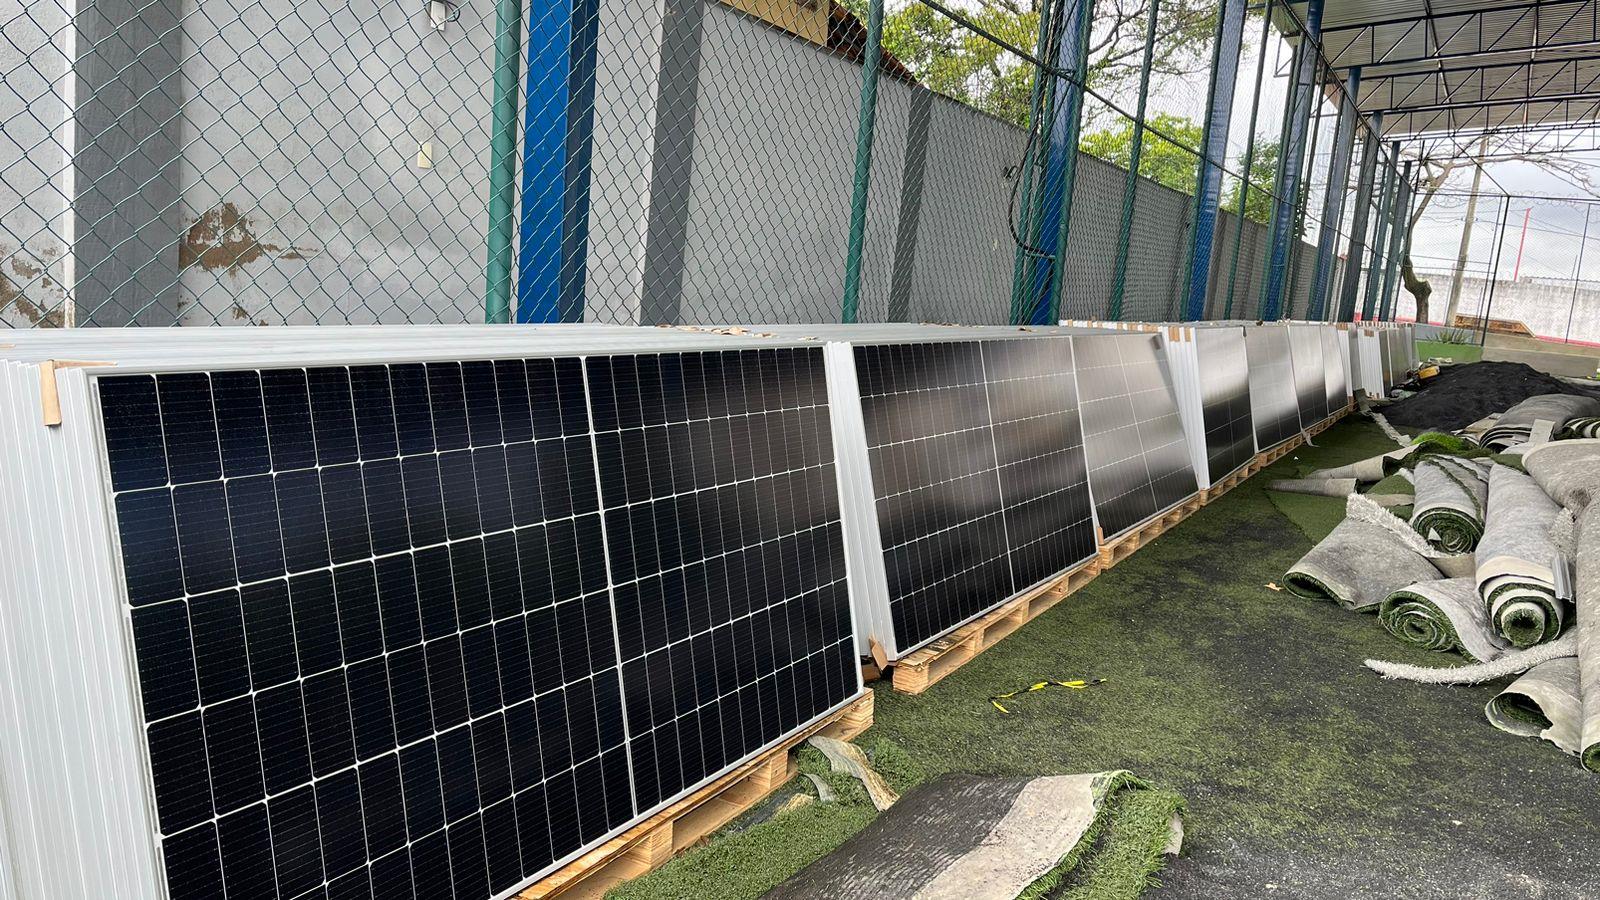 Com o objetivo de investir em energia limpa e renovável, o Clube Asbemge está instalando em suas dependências uma usina fotovoltaica